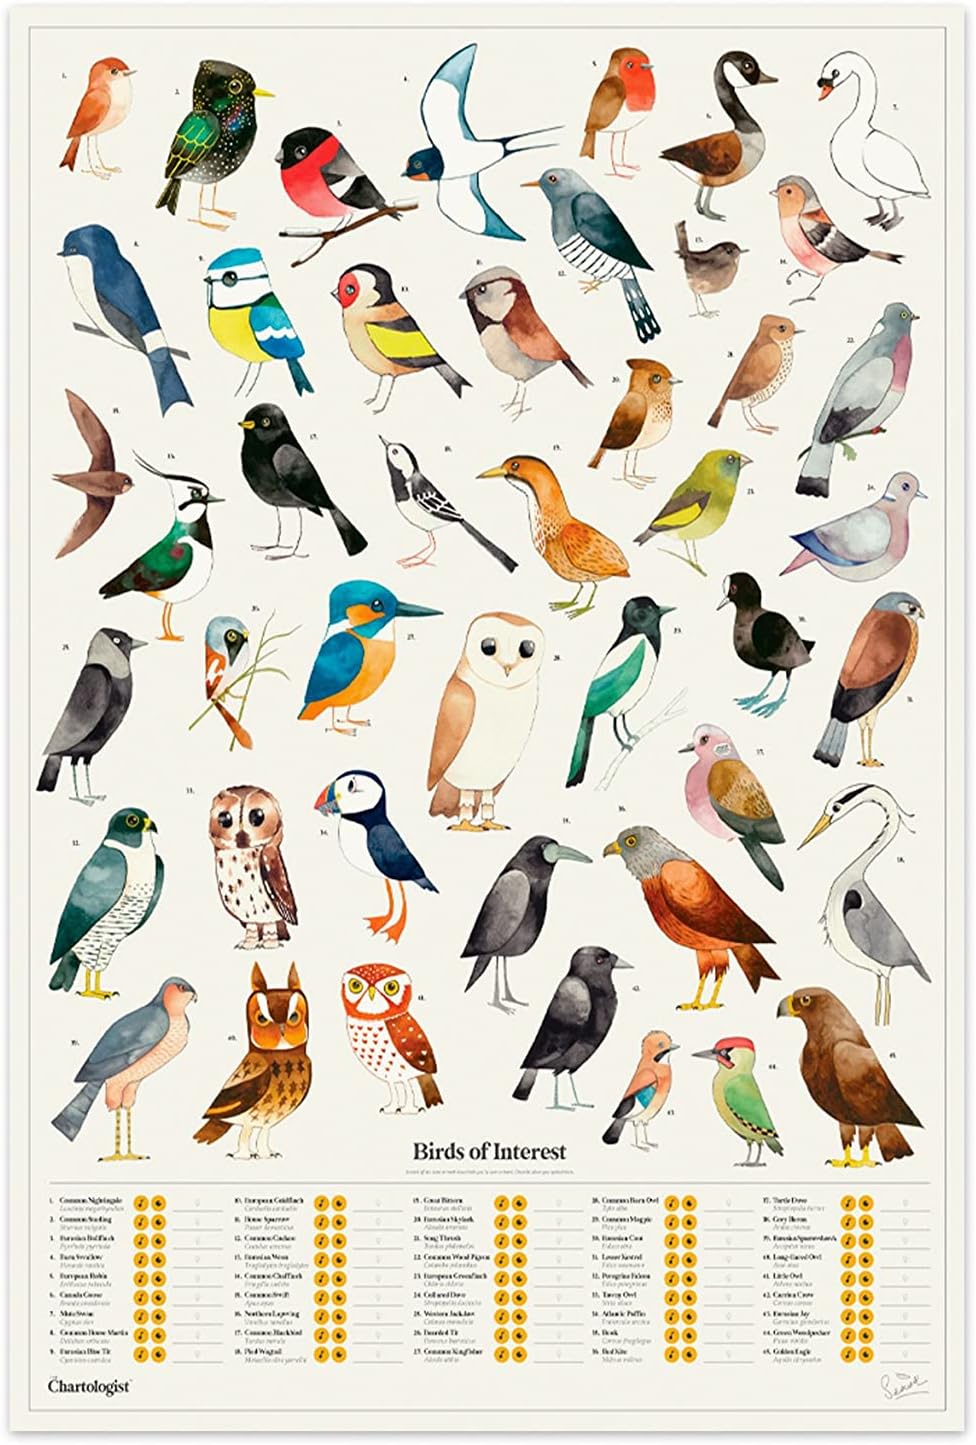 THE CHARTOLOGIST INTERACTIVE WALL ART – BIRDS OF INTEREST